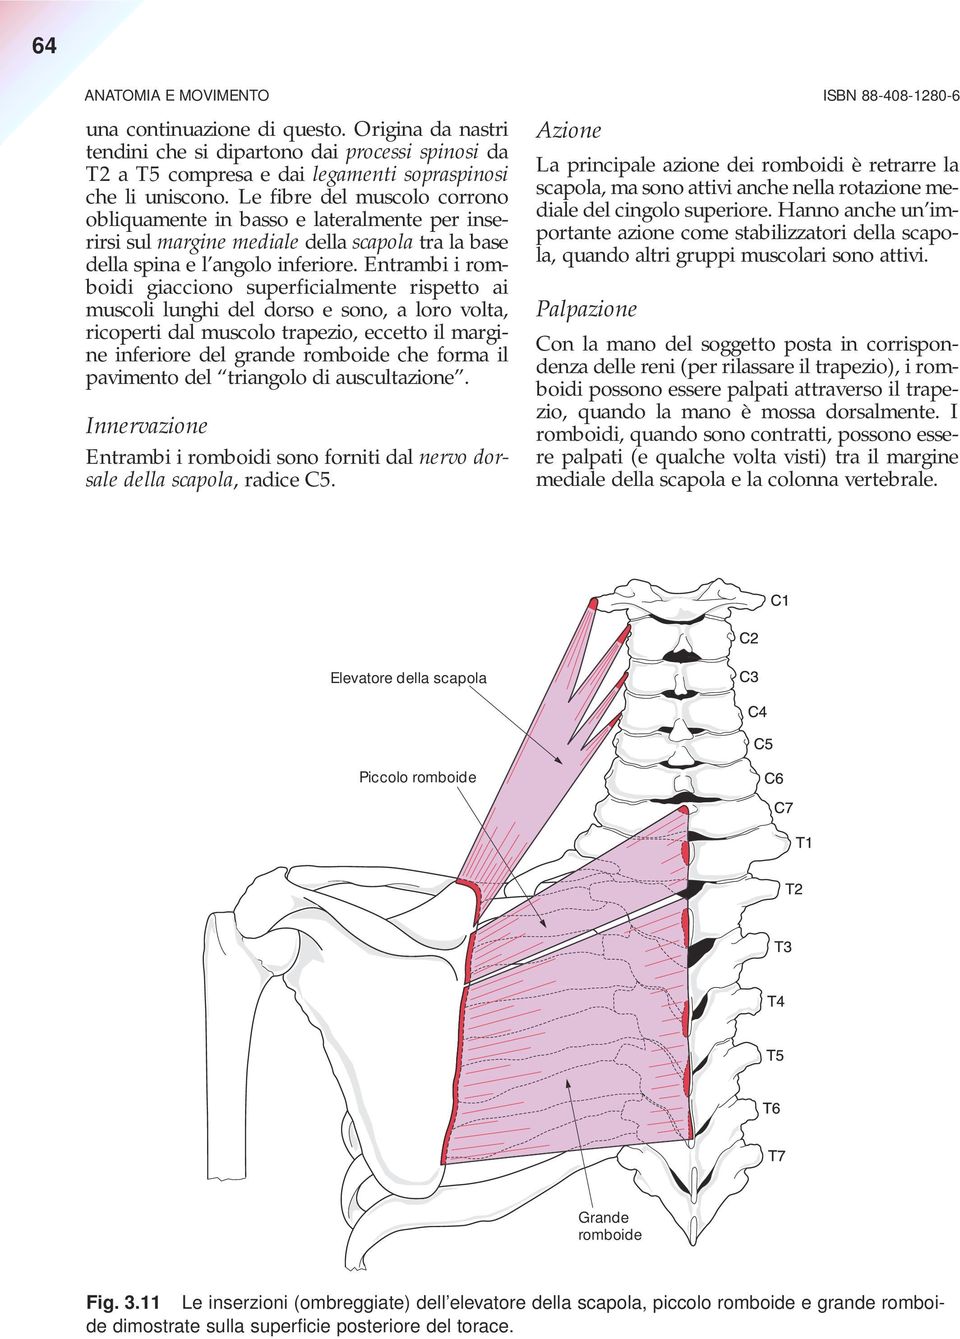 Le fibre del muscolo corrono obliquamente in basso e lateralmente per inserirsi sul margine mediale della scapola tra la base della spina e l angolo inferiore.